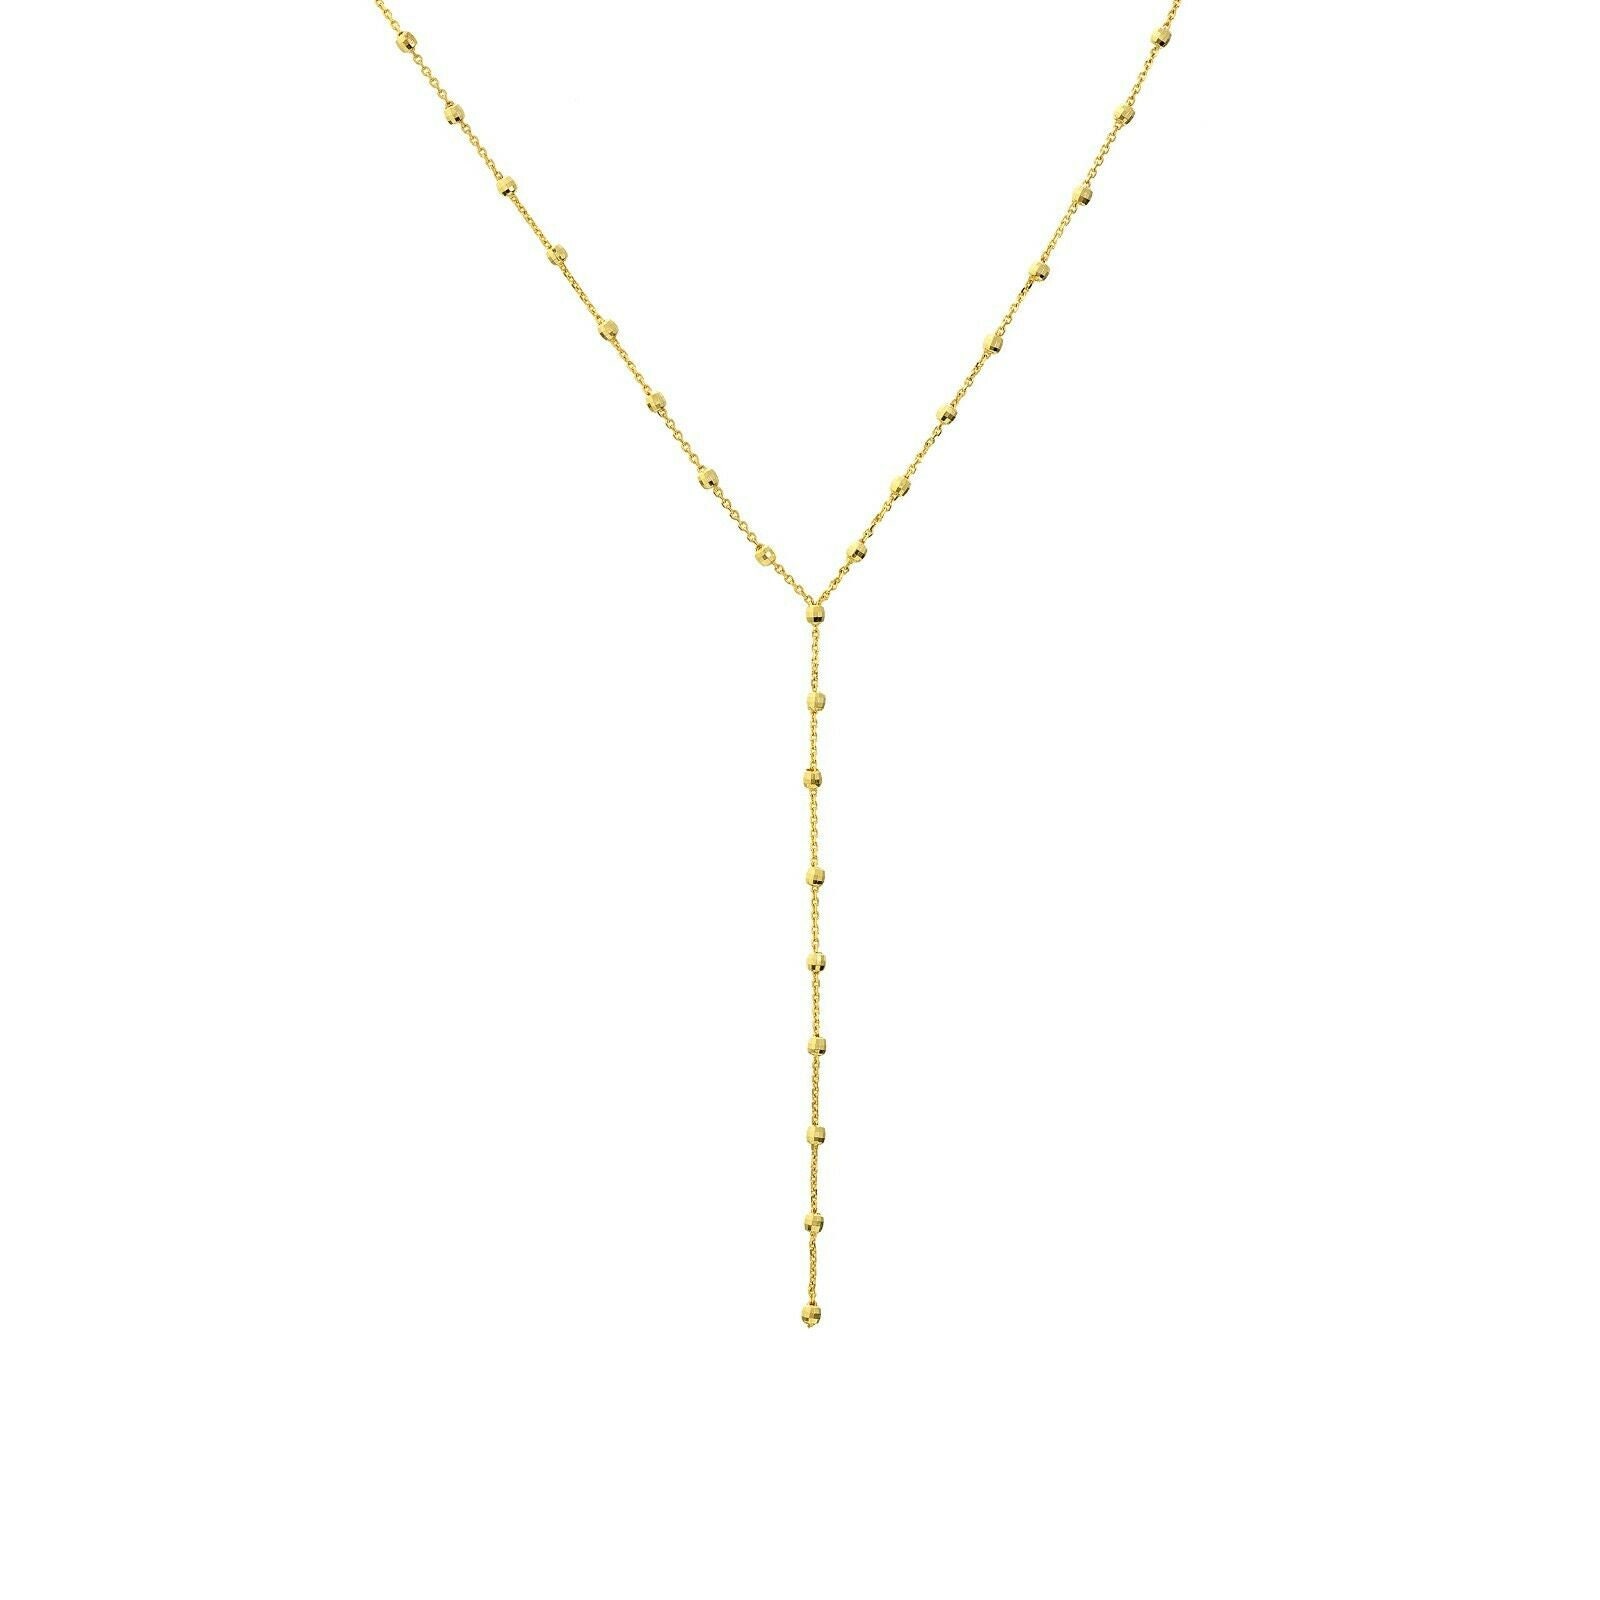 Verstellbare Lariat Halskette Echt 14K Gelbgold 18" von BayamJewelry